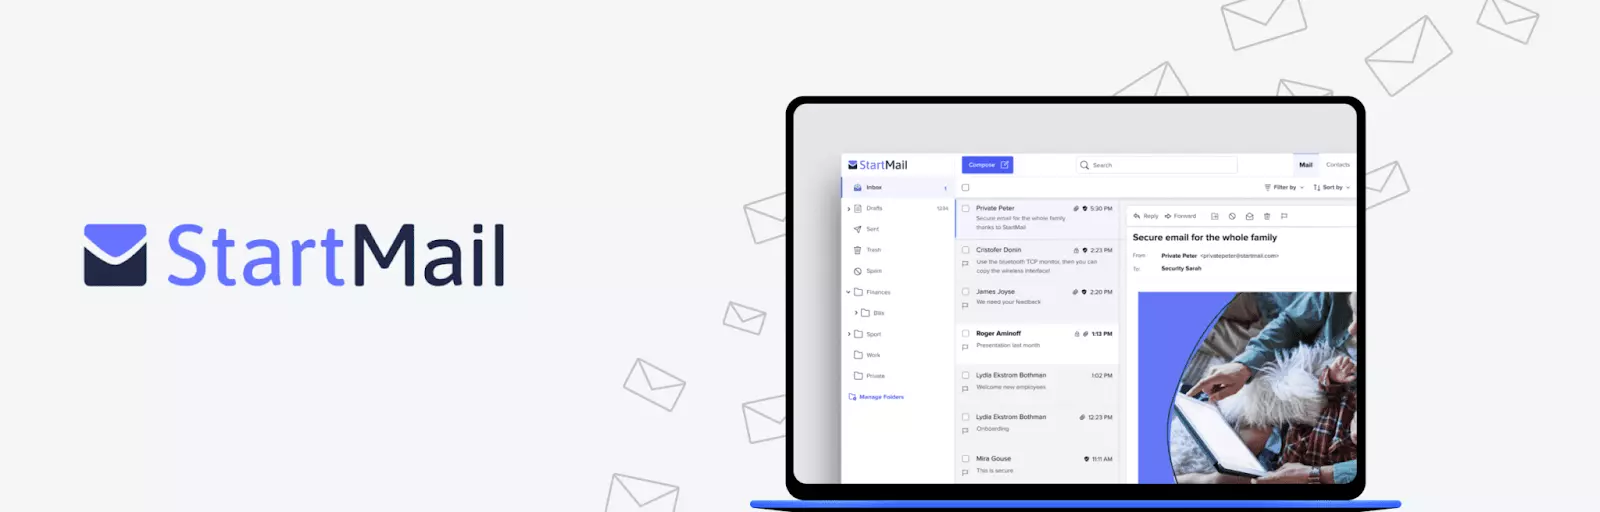 Start Mail- Alternativas de Fastmail